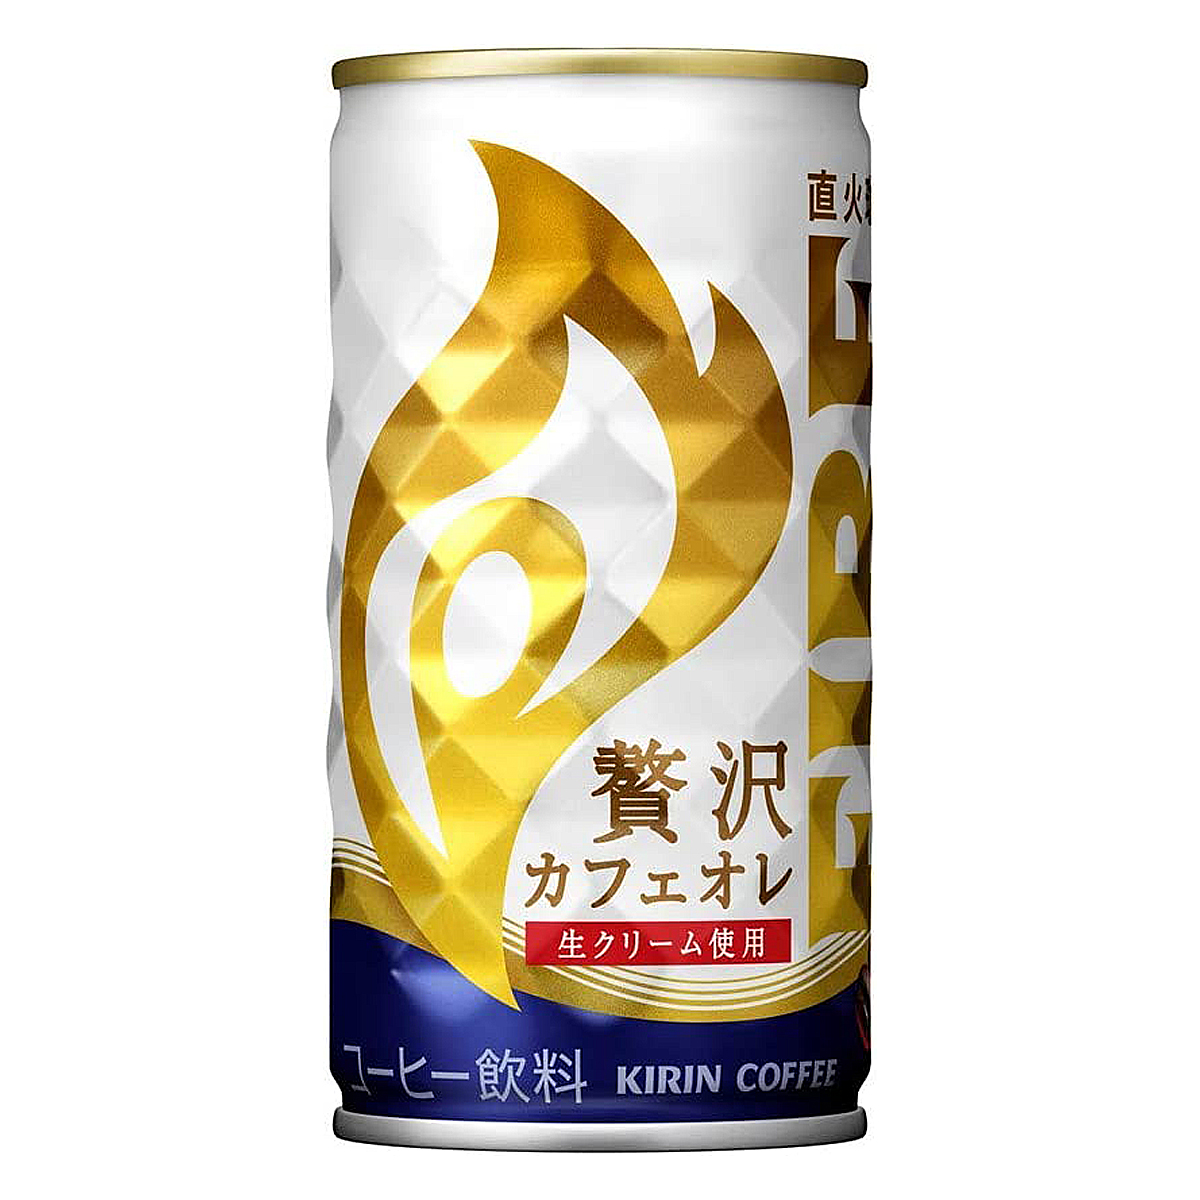 【2ケース】 キリン ファイア 贅沢カフェオレ 185g 缶 飲料 飲み物 ソフトドリンク 30本×2ケース 買いまわり ポイント消化飲料 ドリンク